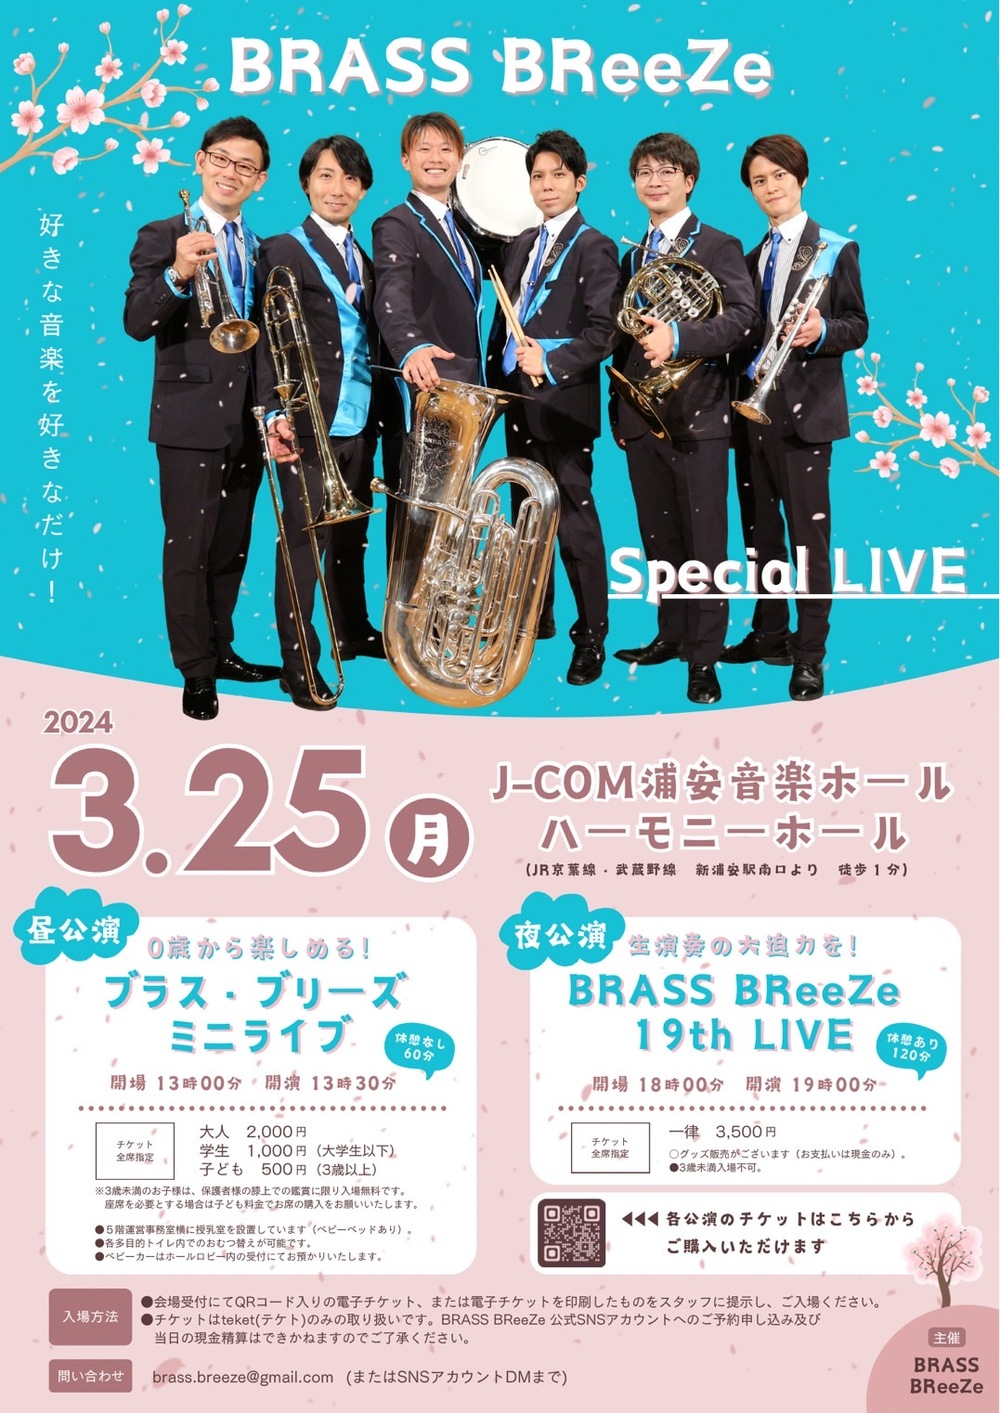 金管打楽器『BRASS BReeZe』Special LIVE【BRASS BReeZe】 | J:COM浦安 